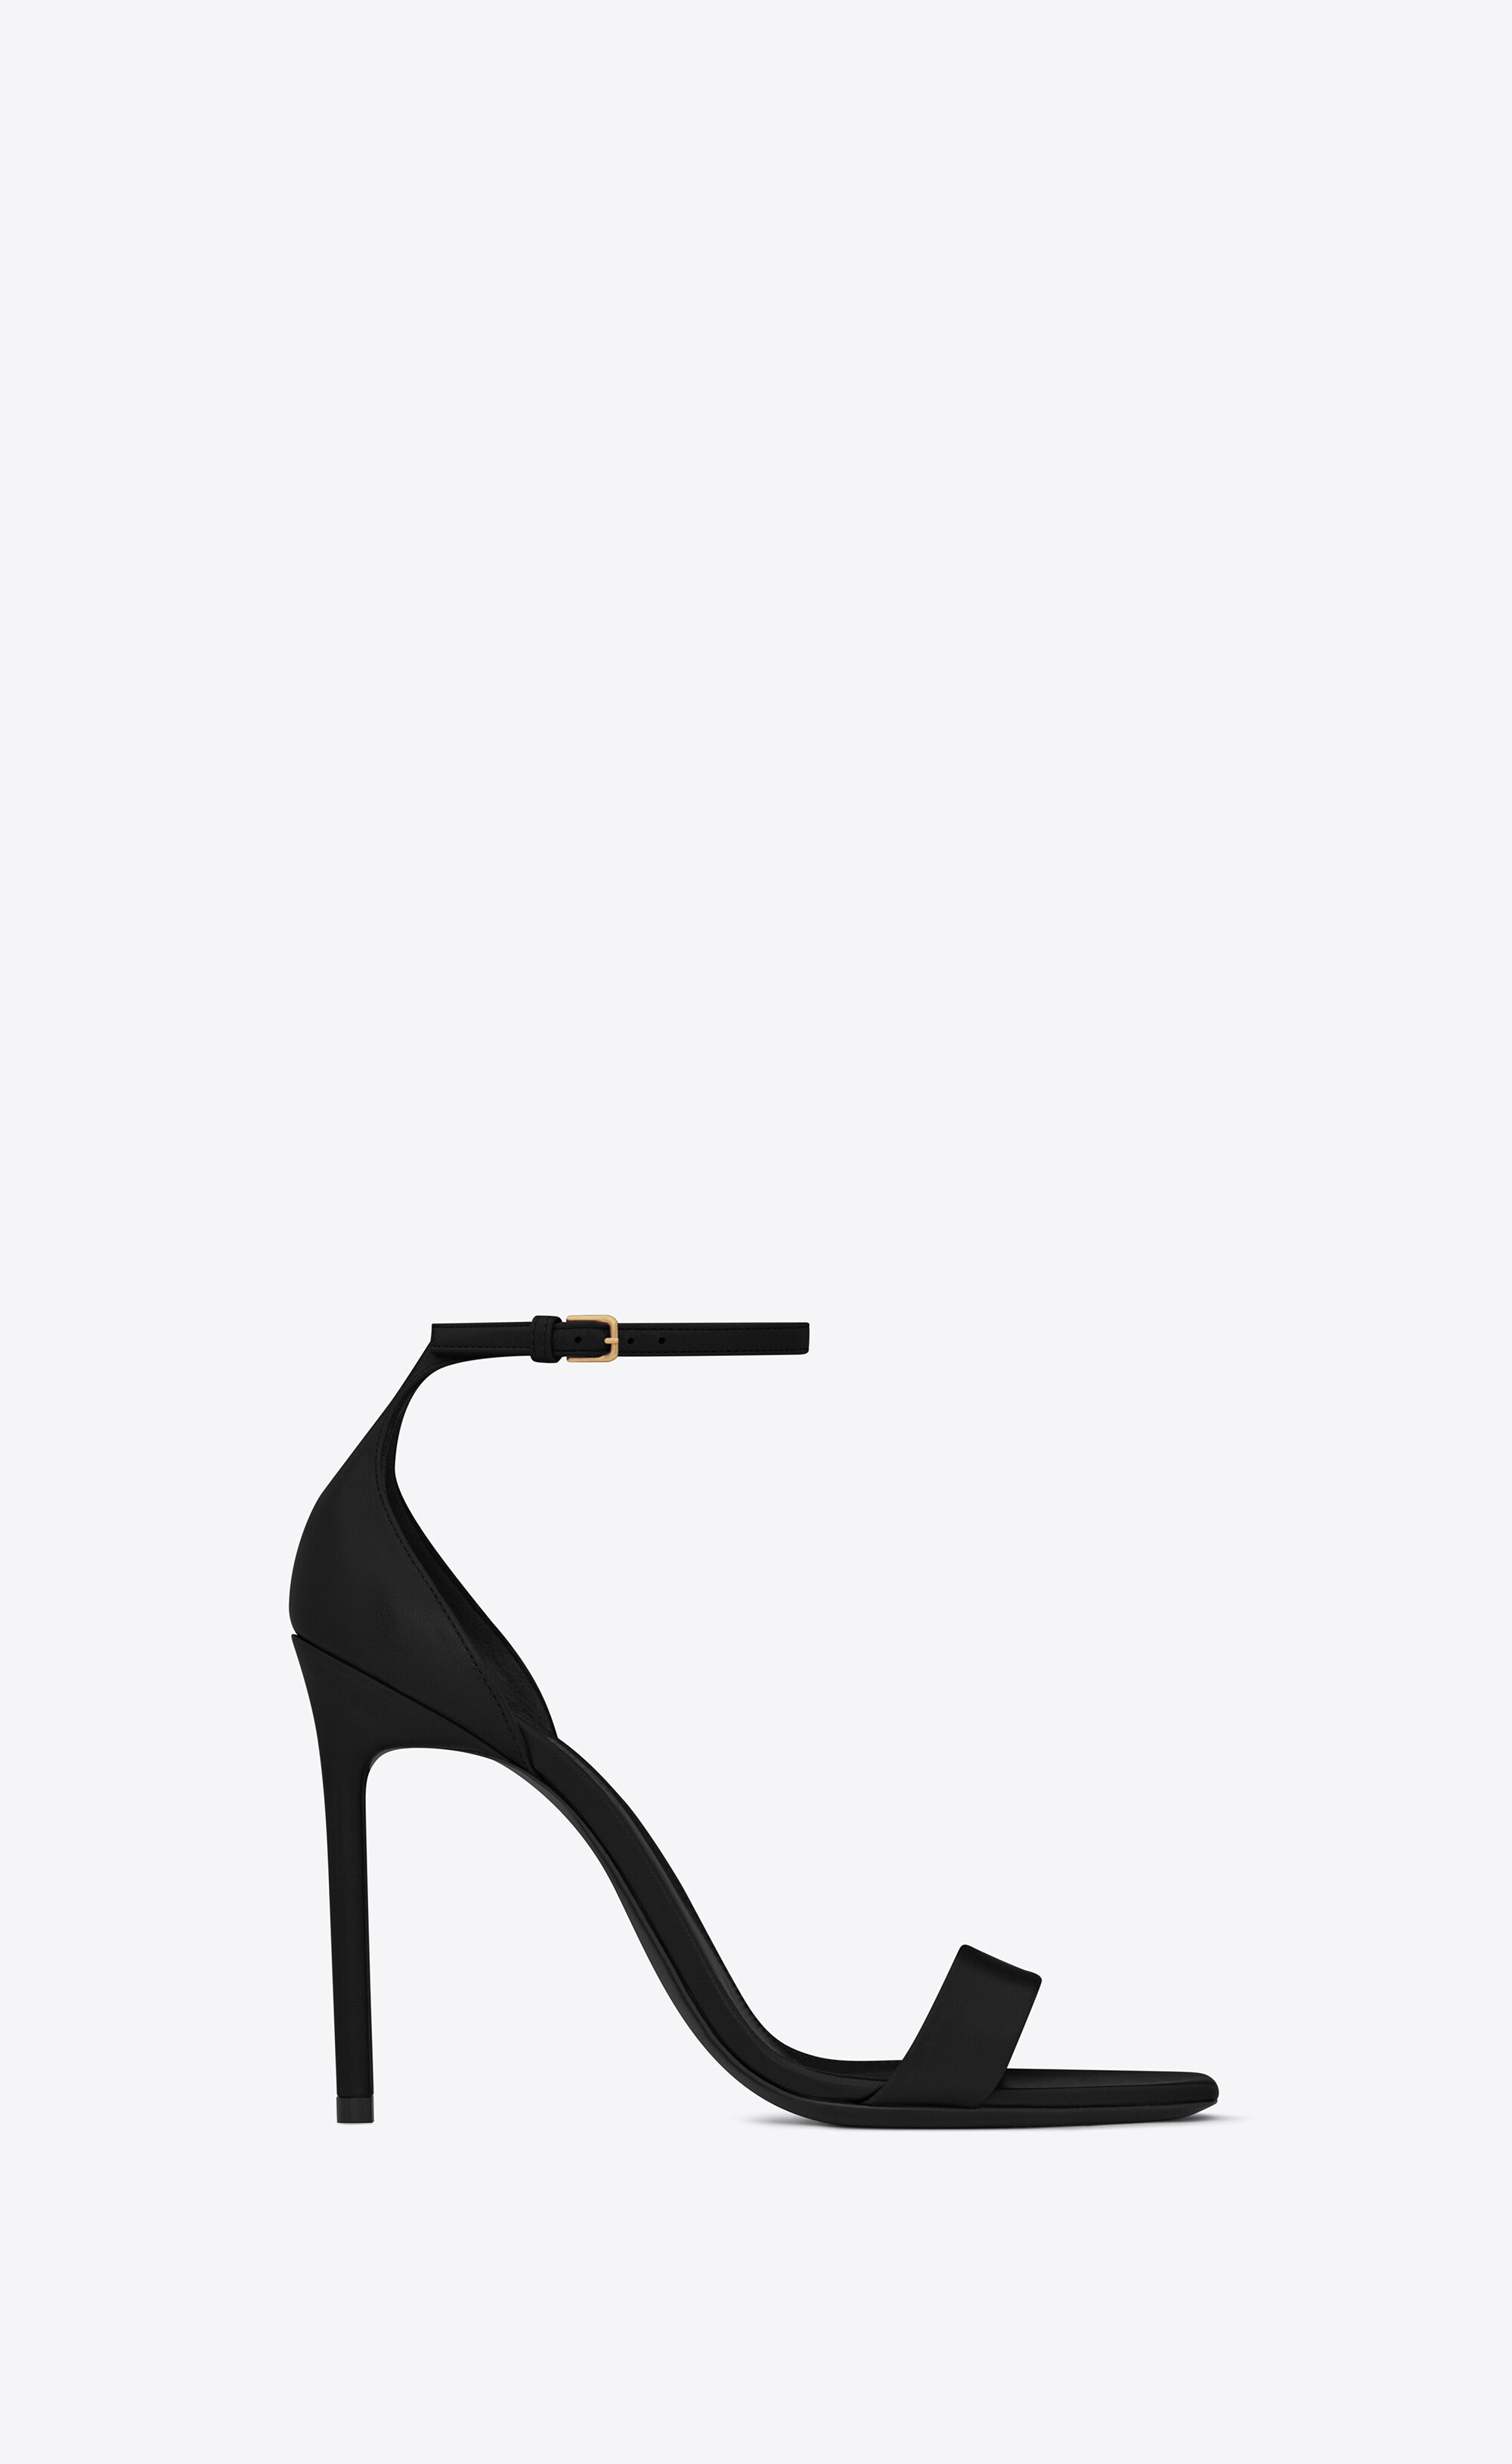 Saint Laurent | Shoes | Saint Laurent Anja Pumps In Patent Leather Size 4 W  Box | Poshmark